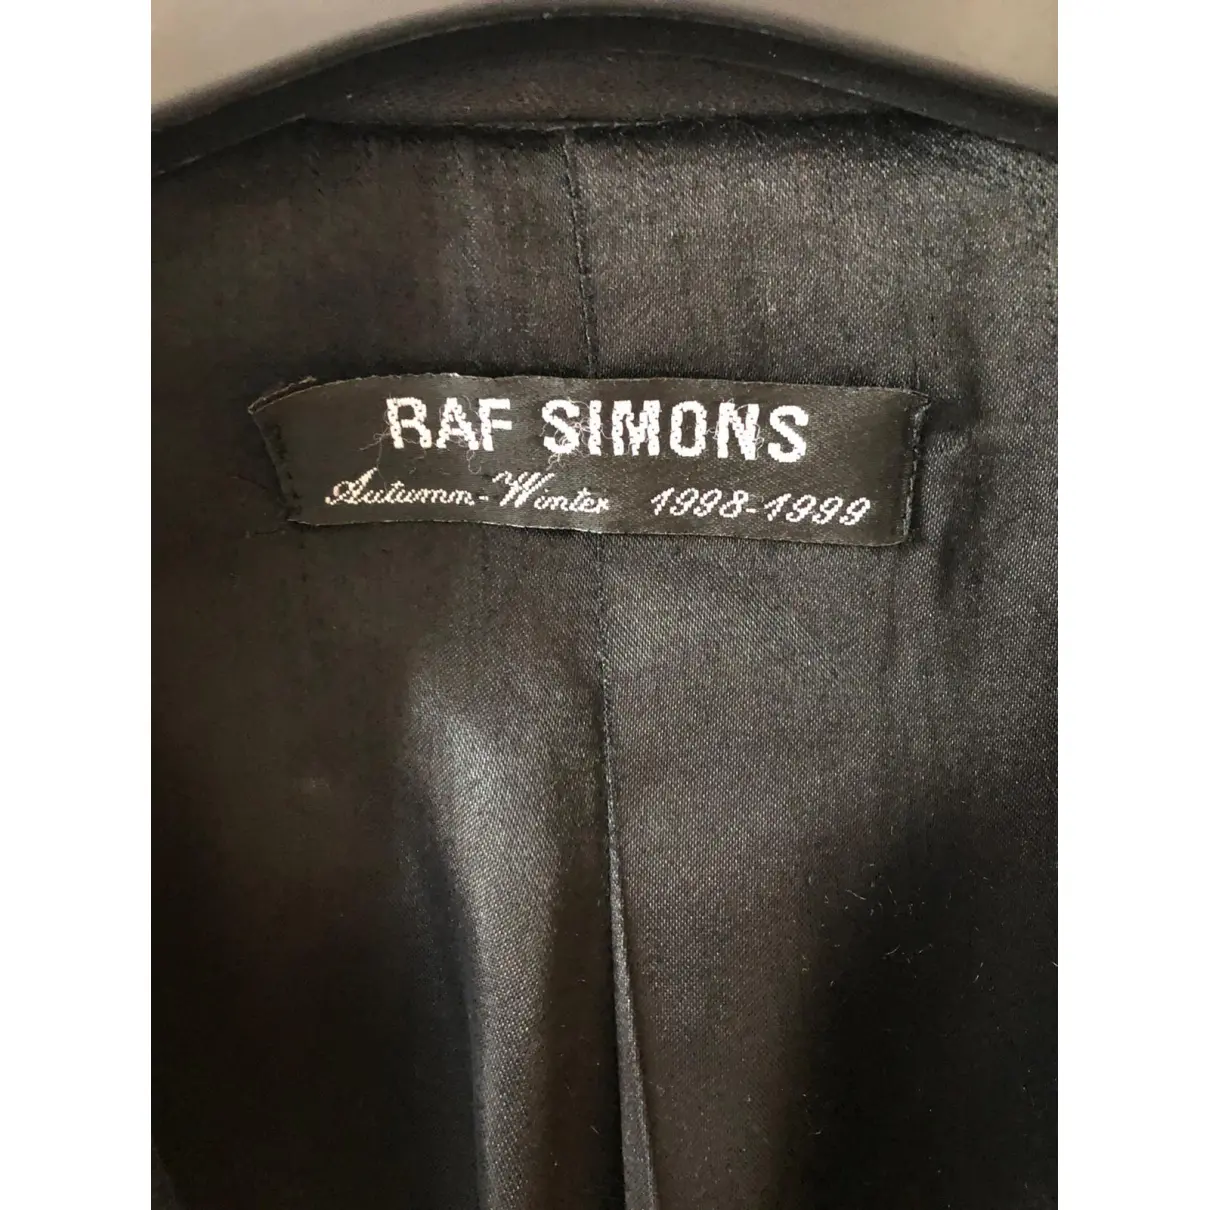 Buy Raf Simons Coat online - Vintage